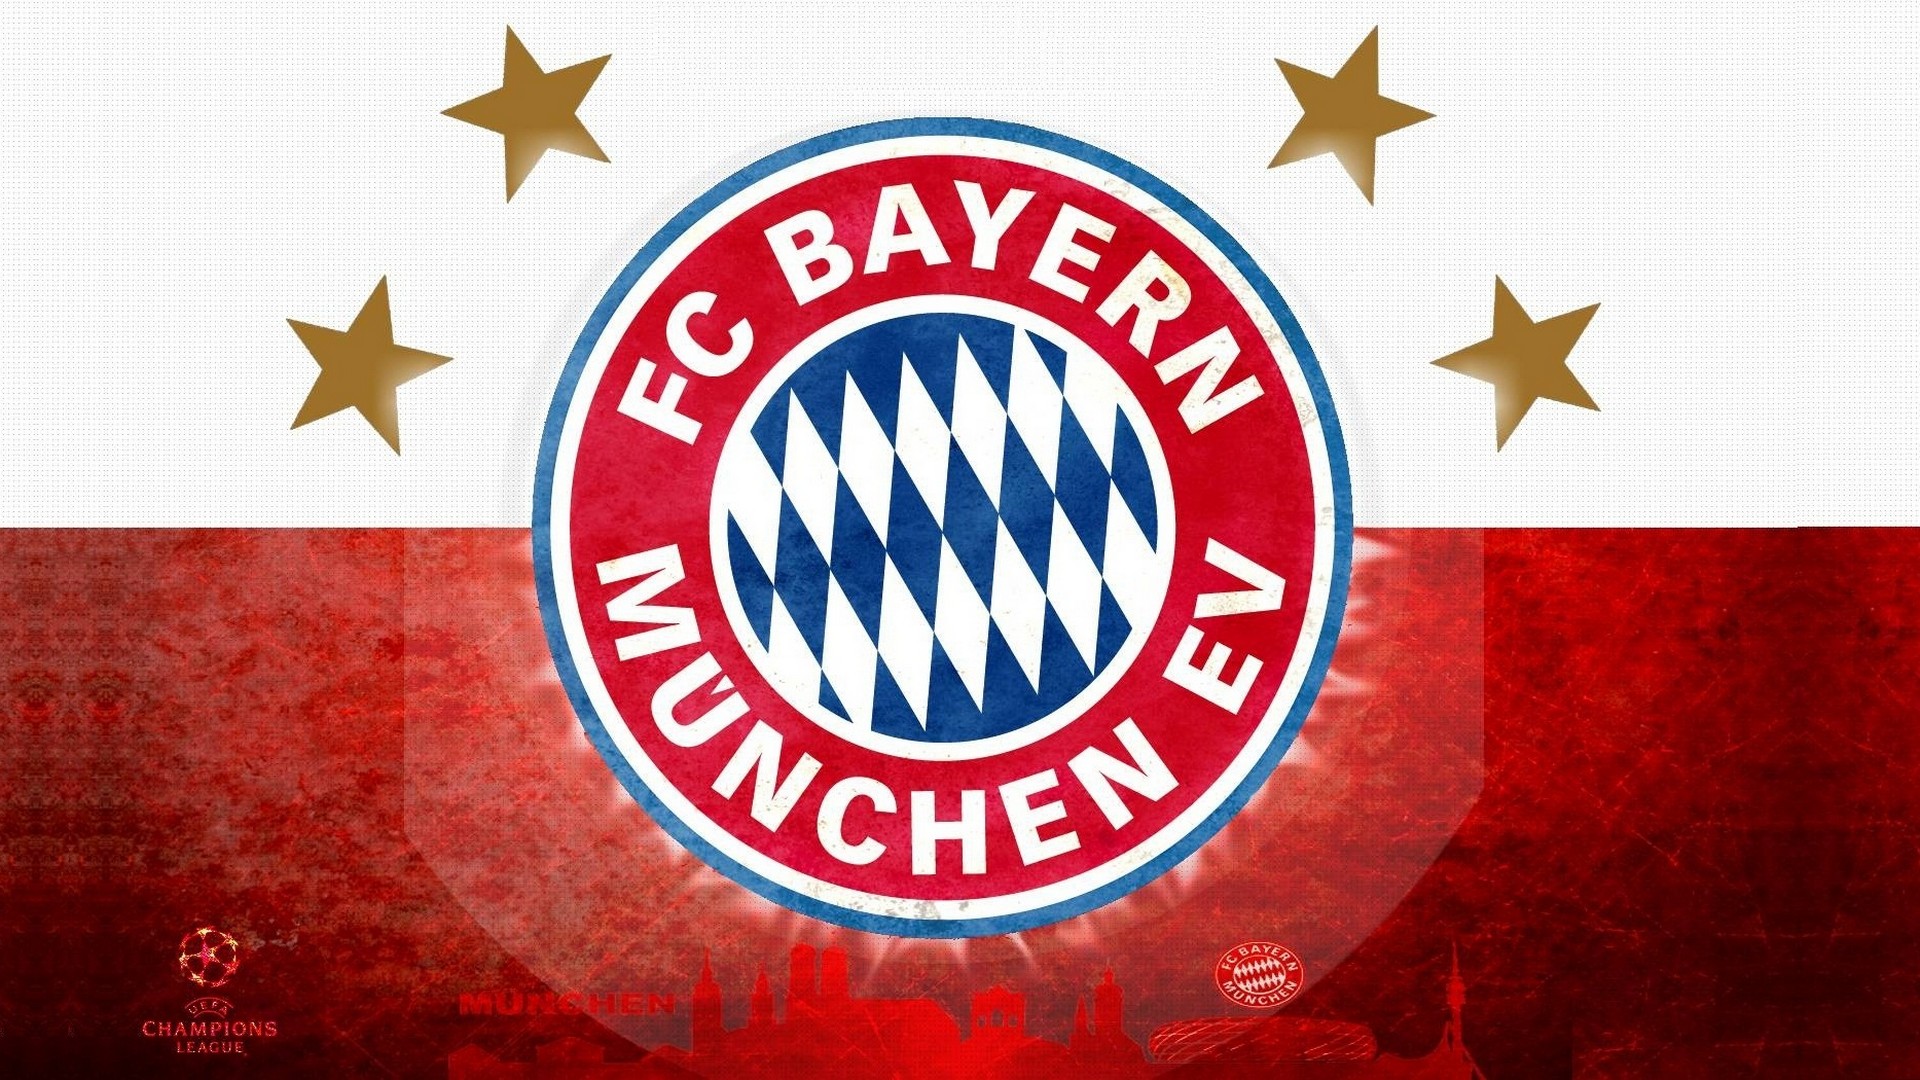 Fc Bayern Munchen Wallpaper Football